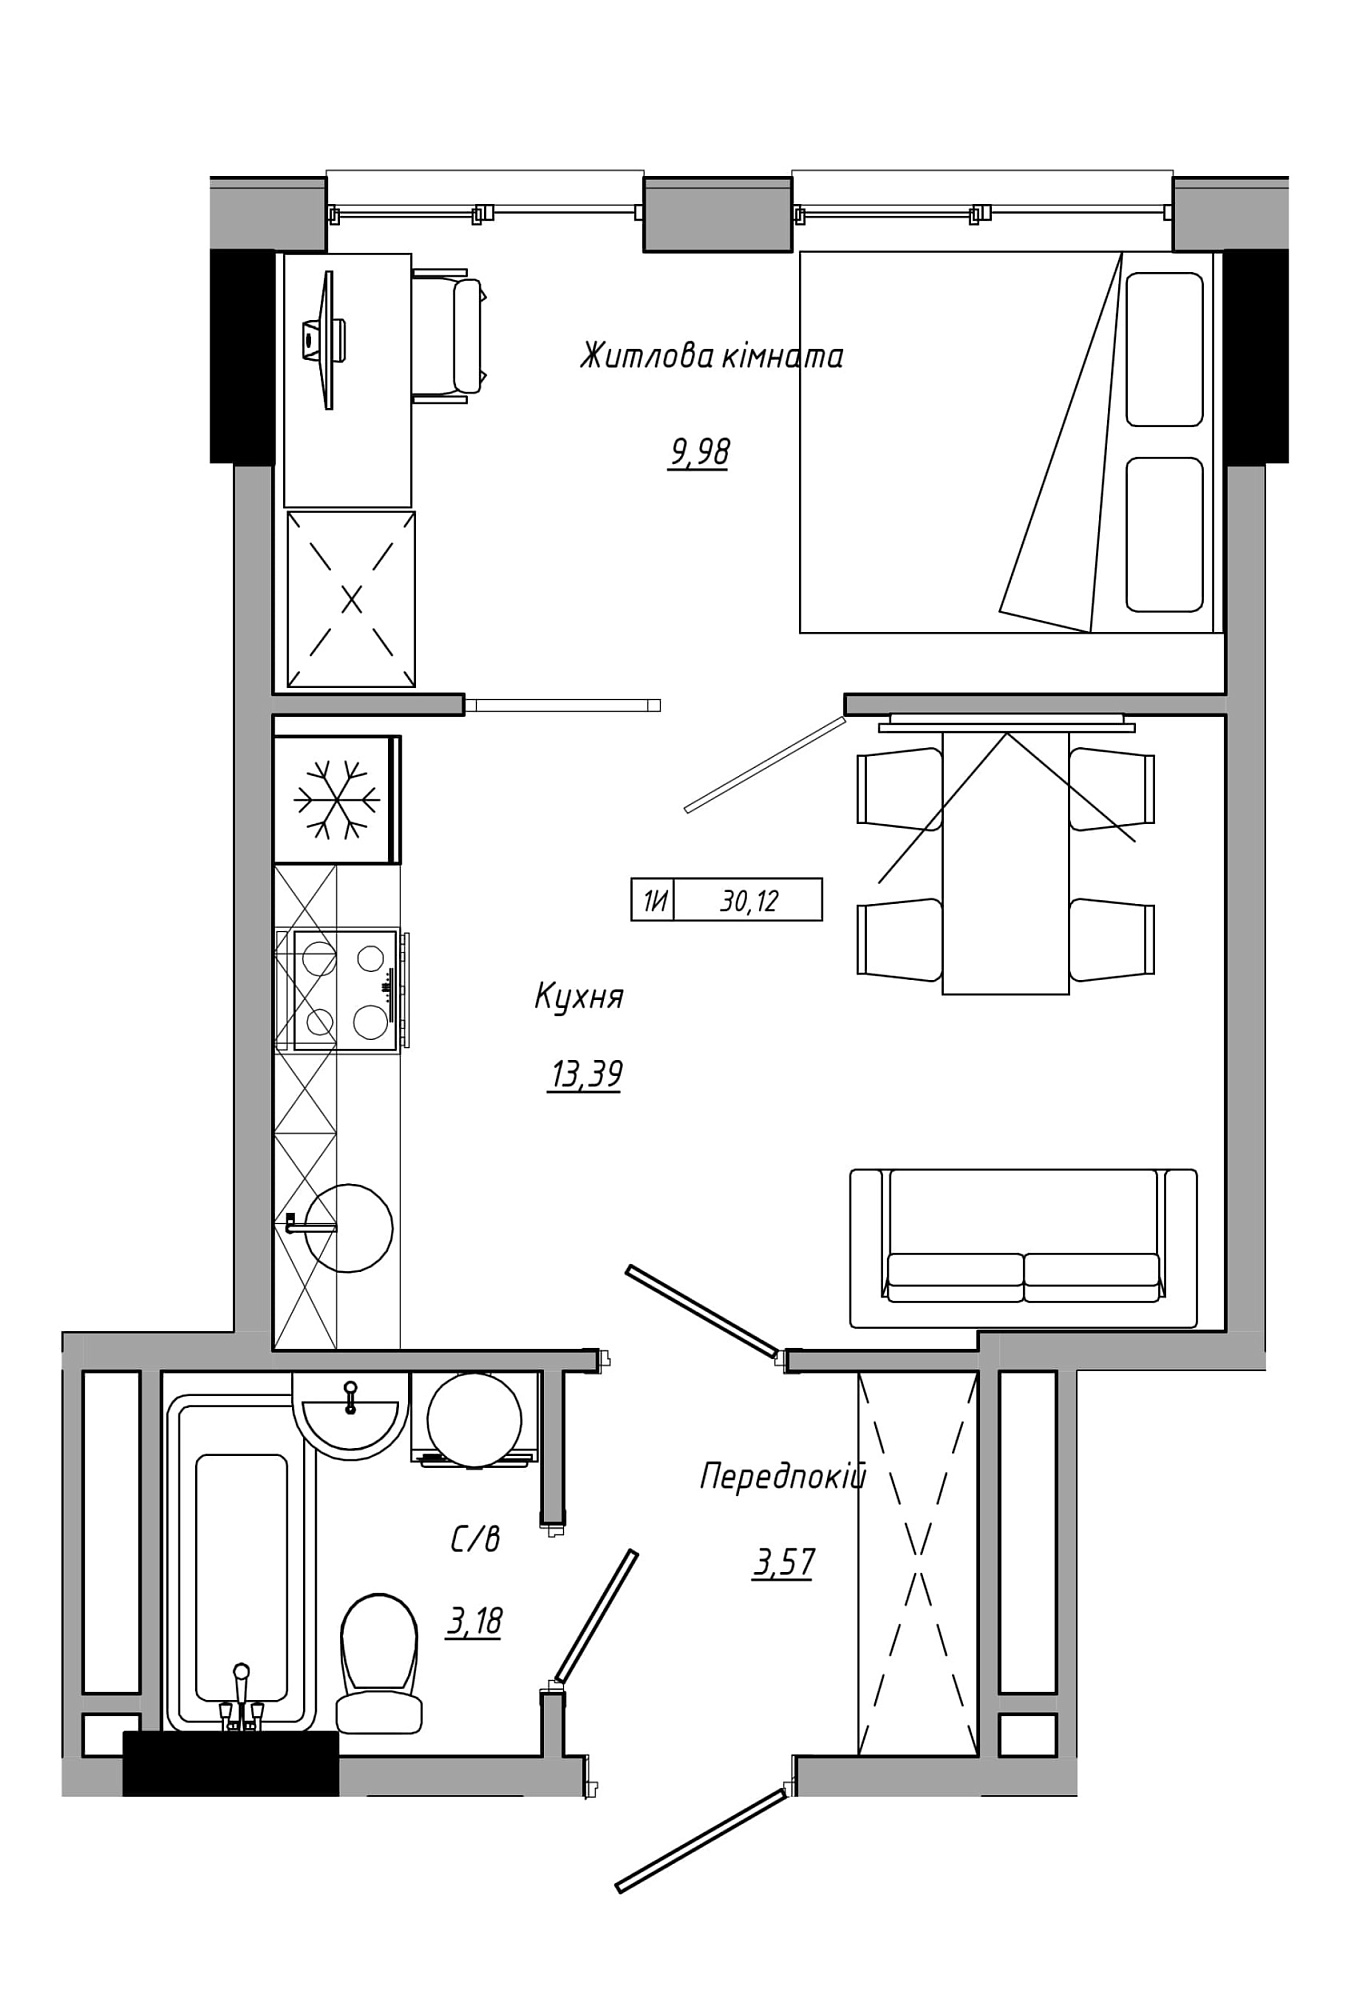 Планировка 1-к квартира площей 30.12м2, AB-21-12/00012.